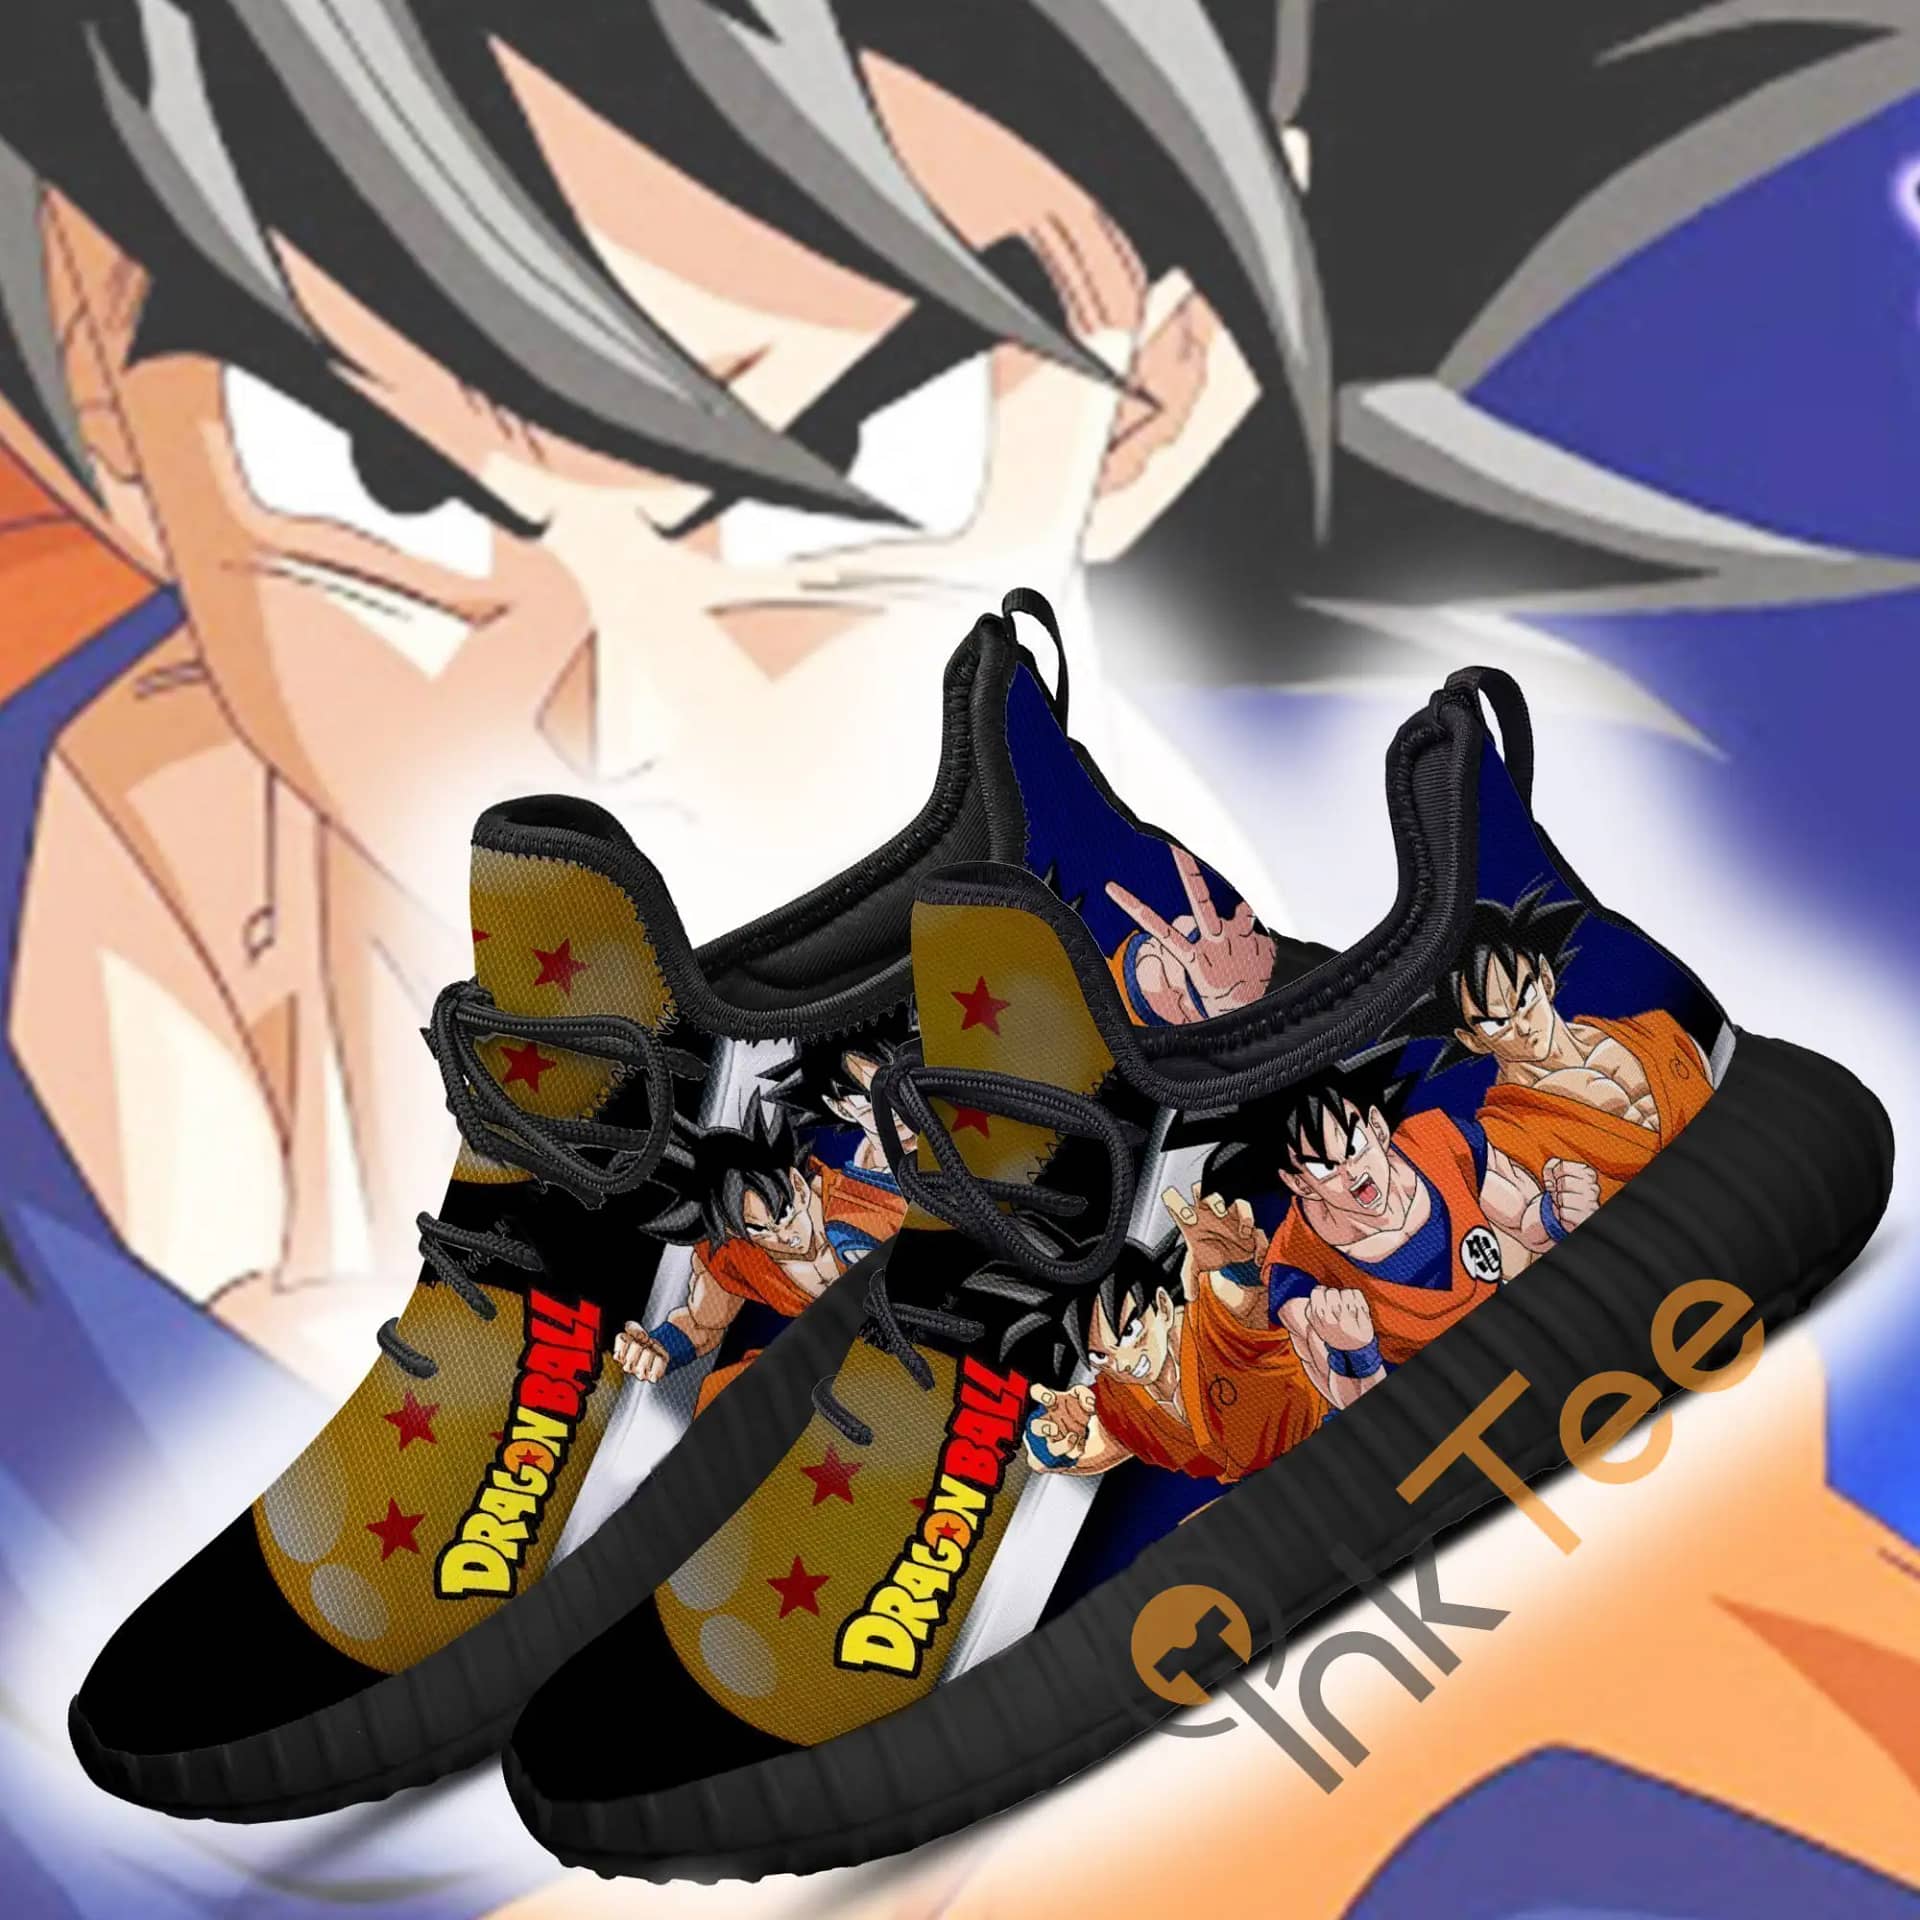 Inktee Store - Goku Dragon Ball Anime Amazon Reze Shoes Image